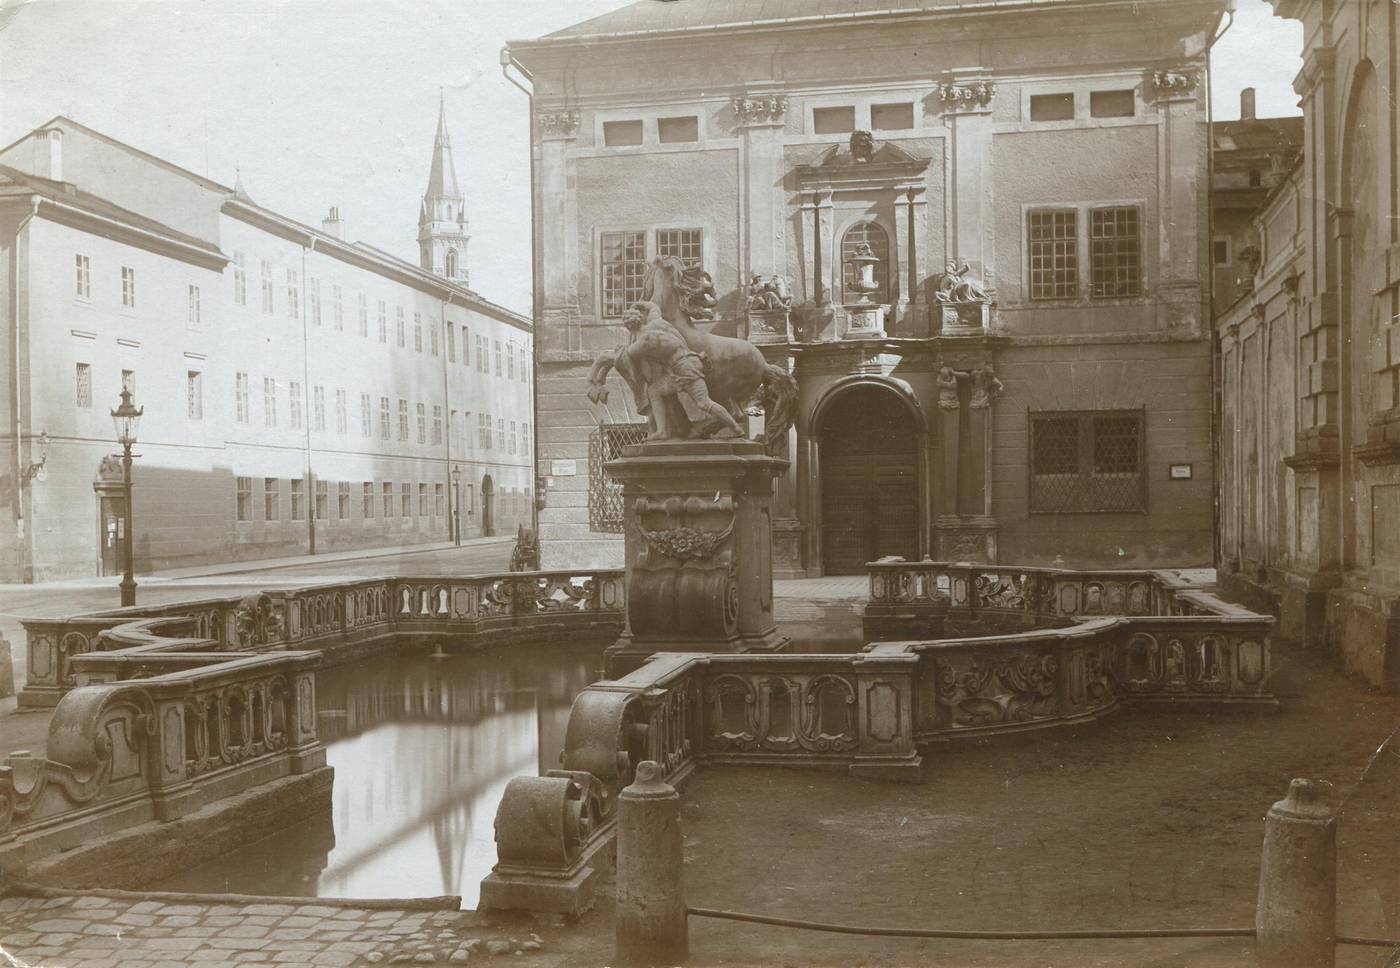 UNBEKANNT (Person), Pferdeschwemme und dahinter das Nordportal des Hofmarstalls, Festspielhaus, Sigmundsplatz 9 (Herbert-von-Karajan-Platz), 1900 - 1910, Inv.-Nr.Foto 41752